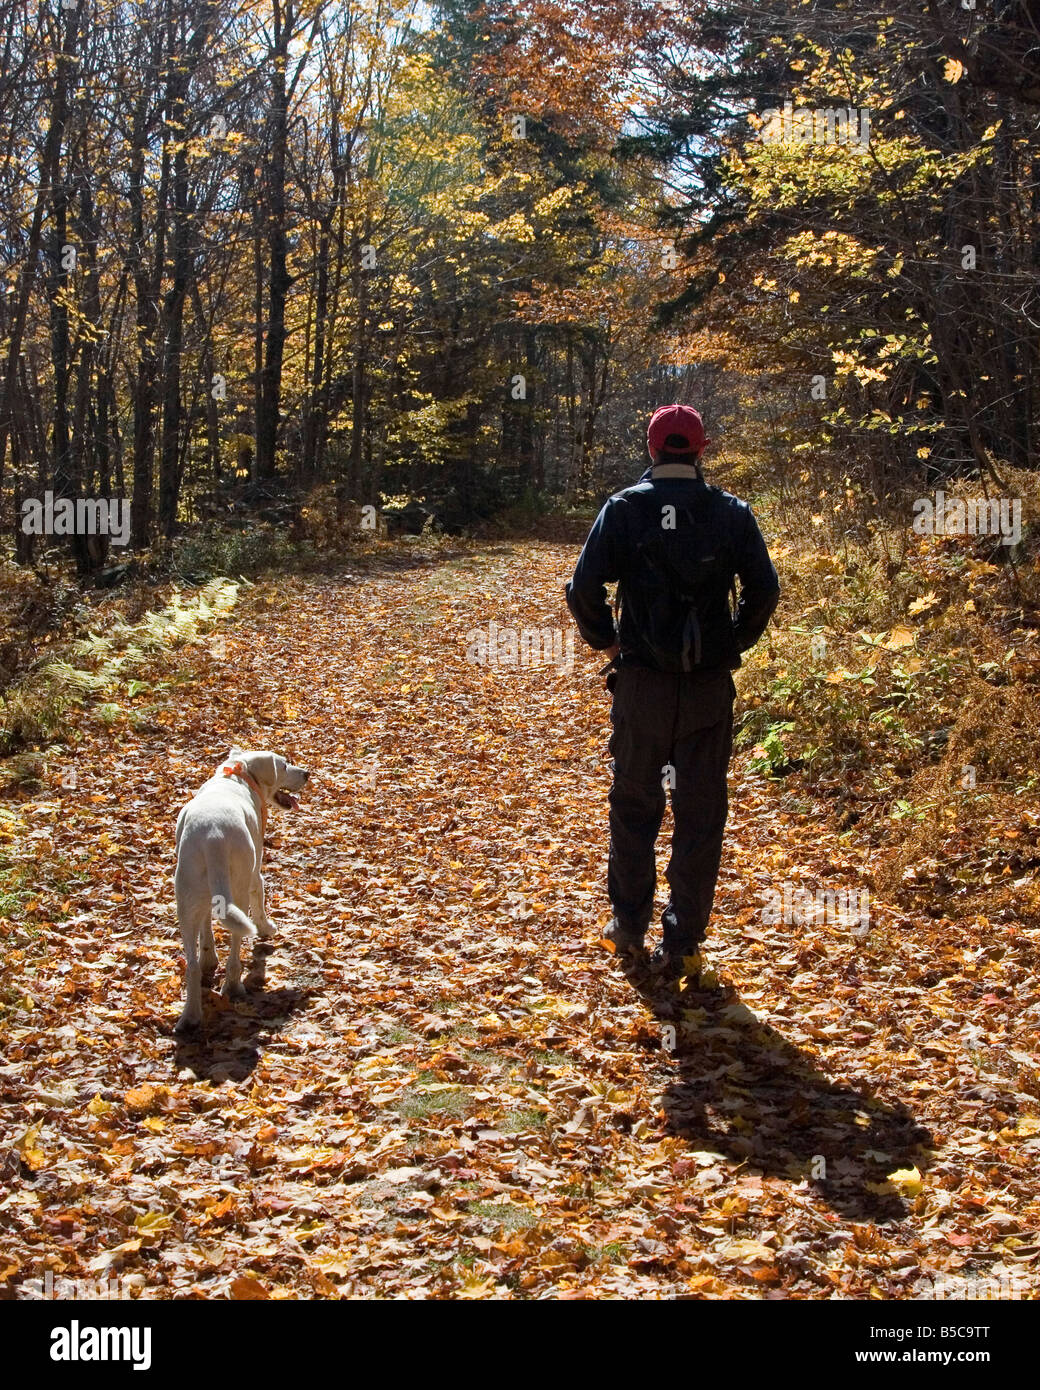 La promenade du chien, la marche avec un chien à travers les feuilles tombées d'un jour d'automne de la Nouvelle Angleterre. Banque D'Images